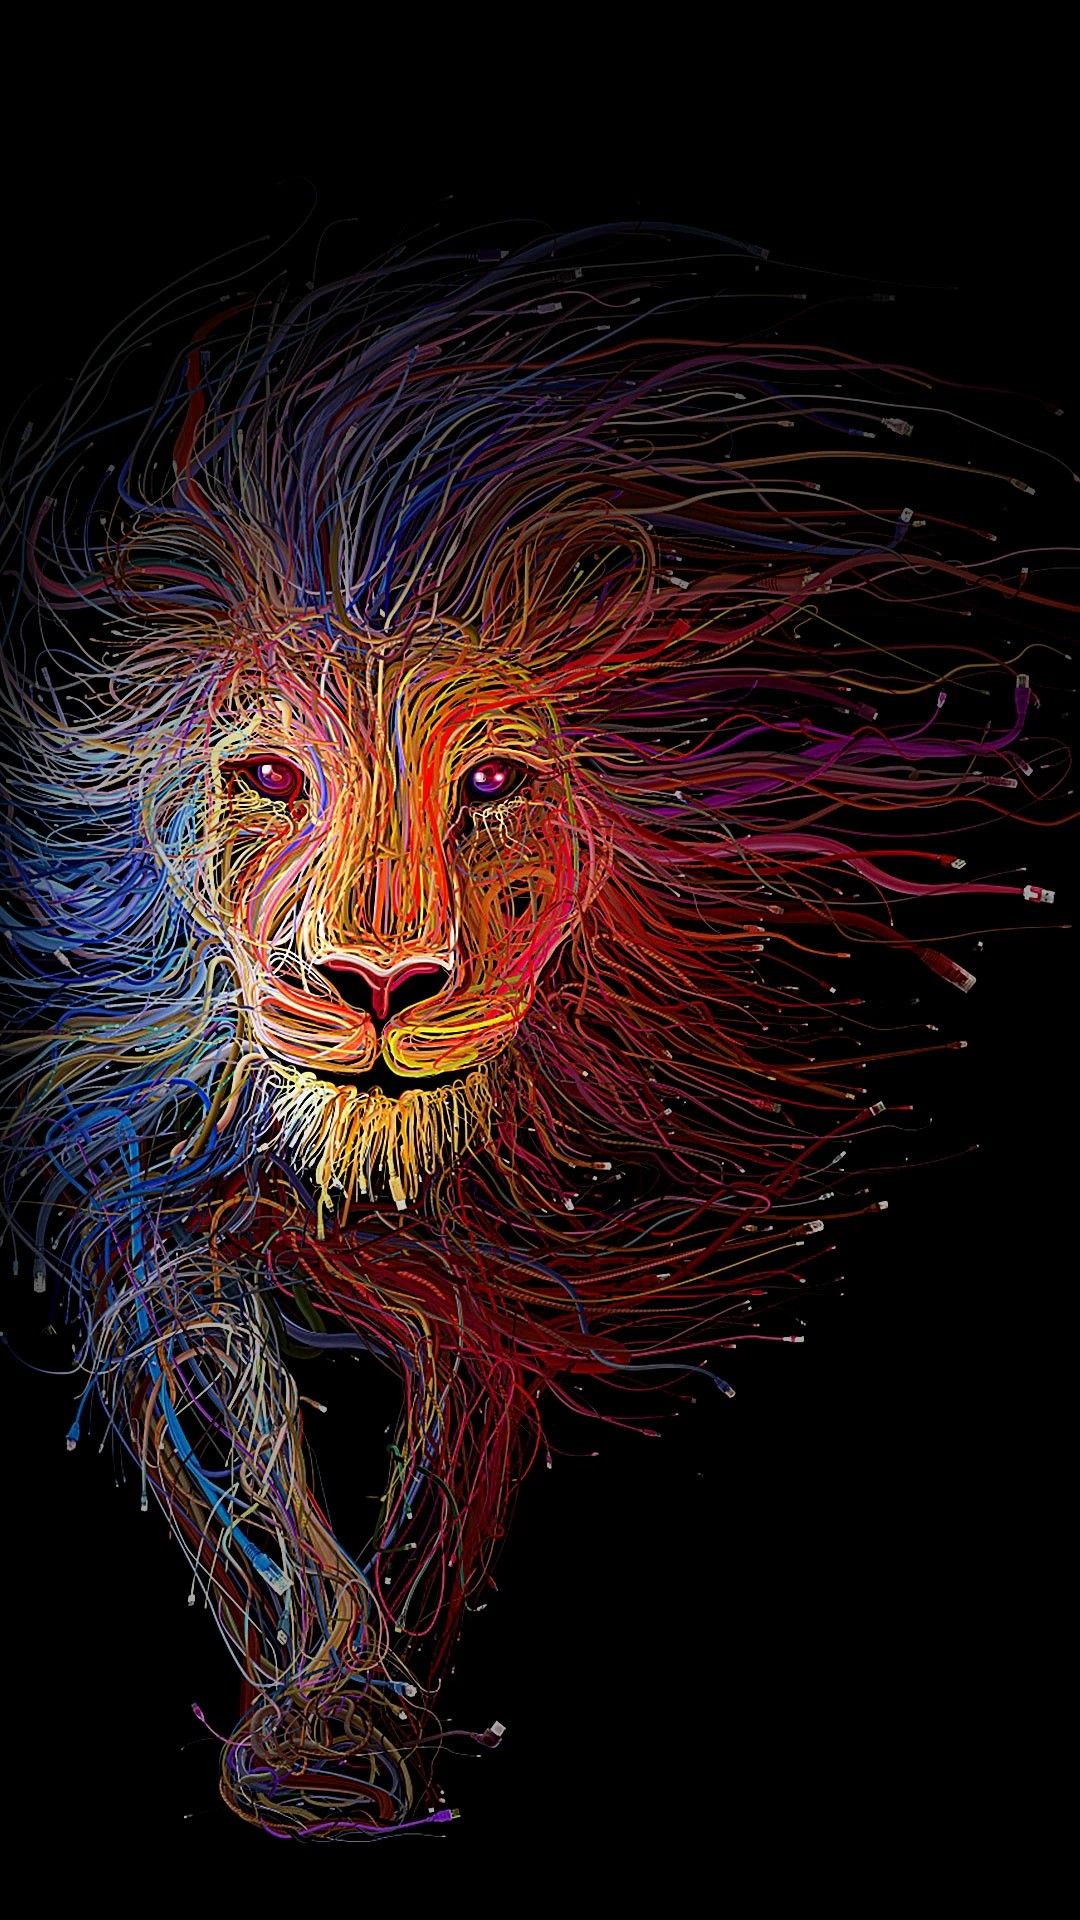 leone sfondi iphone,leone,felidae,grandi gatti,illustrazione,arte